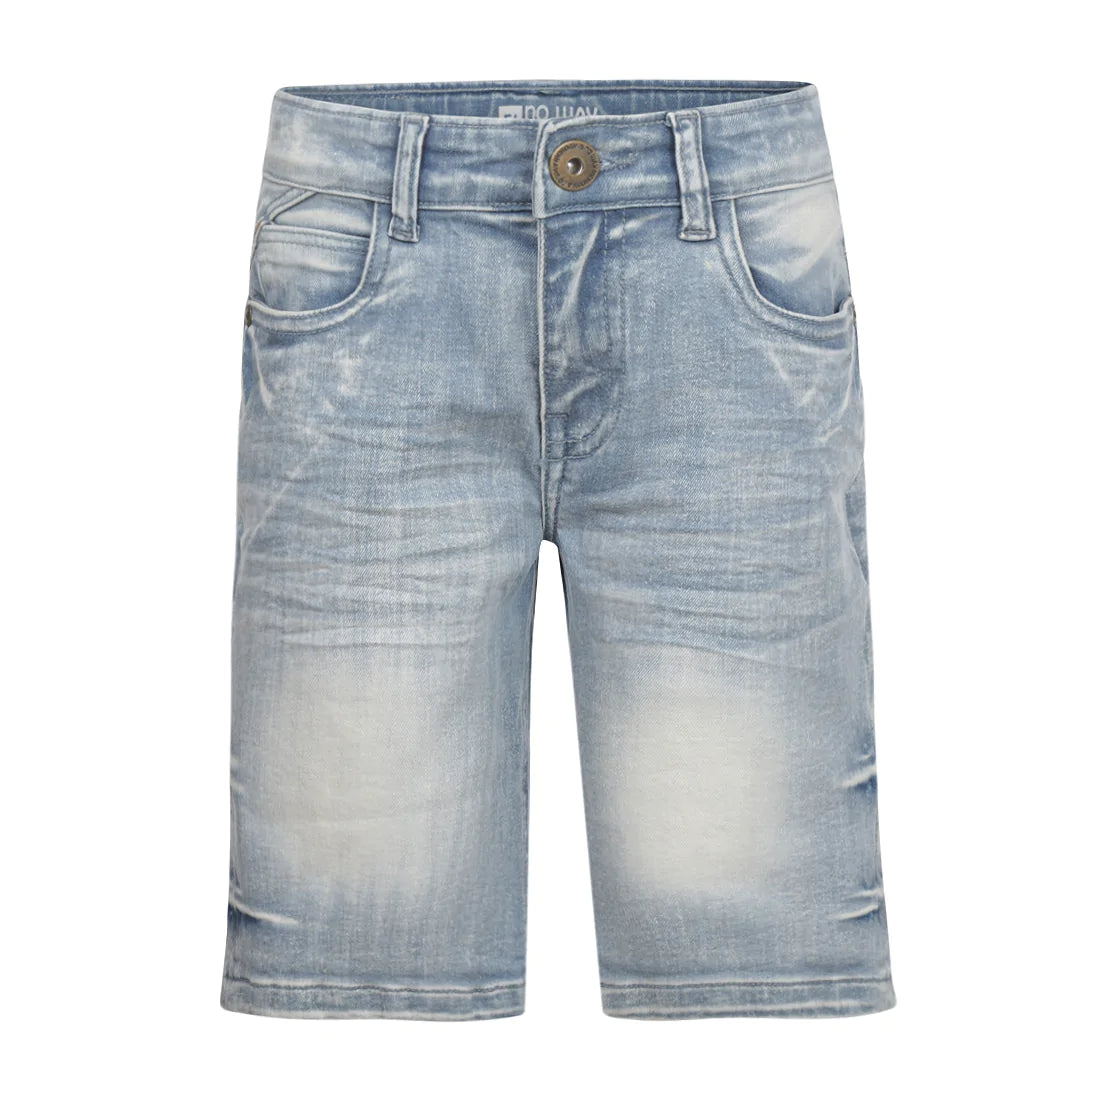 Jongens Jeans shorts Regular van No Way Monday in de kleur Blue jeans in maat 164.